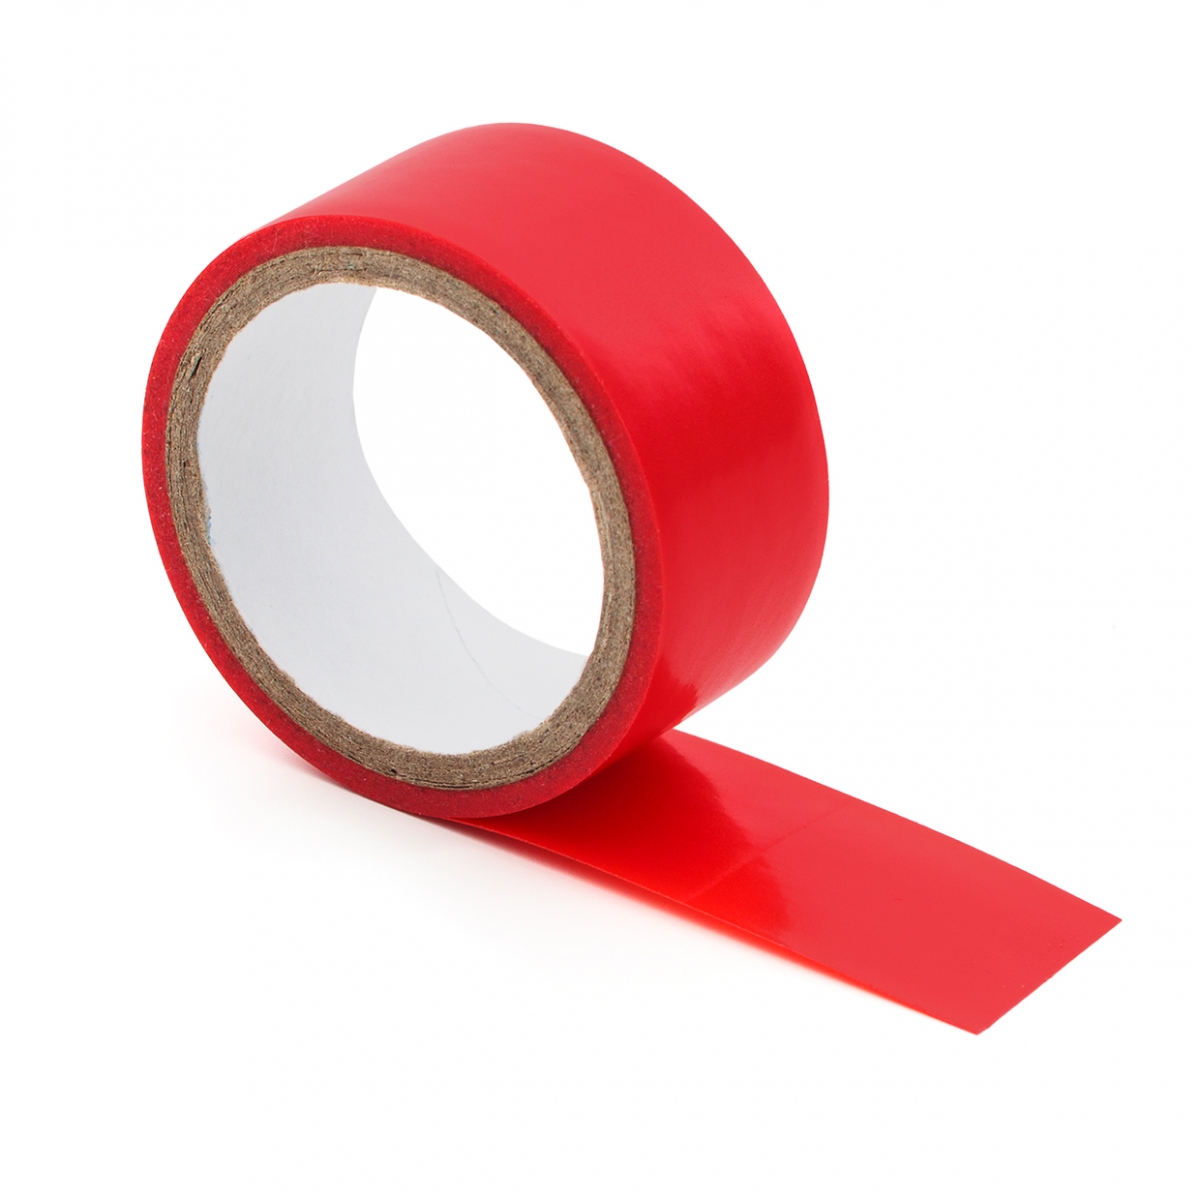 Imagen en la que se ve una cinta aislante roja